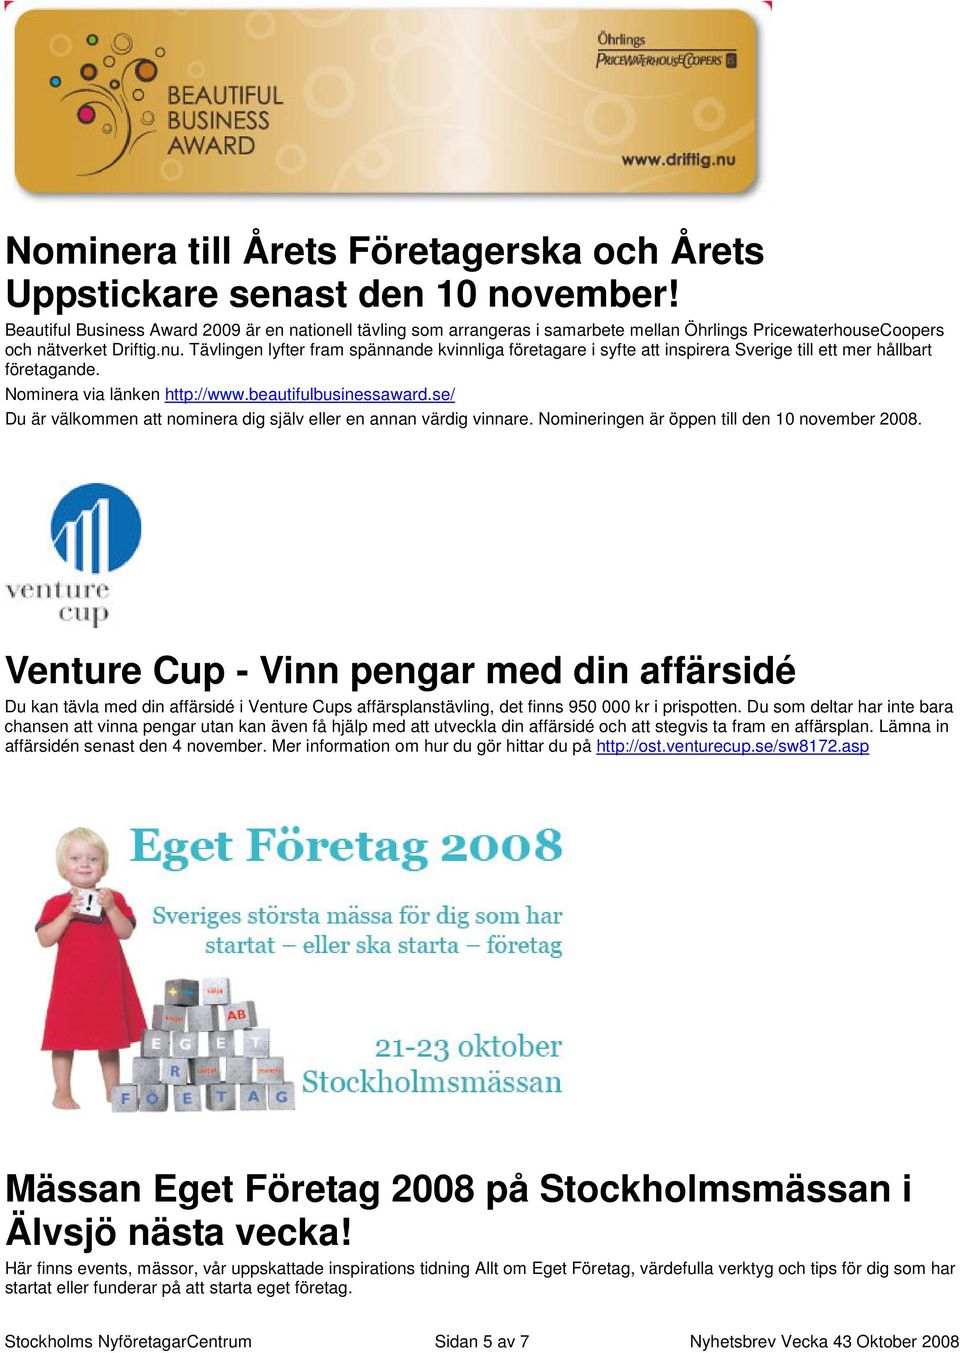 Tävlingen lyfter fram spännande kvinnliga företagare i syfte att inspirera Sverige till ett mer hållbart företagande. Nominera via länken http://www.beautifulbusinessaward.